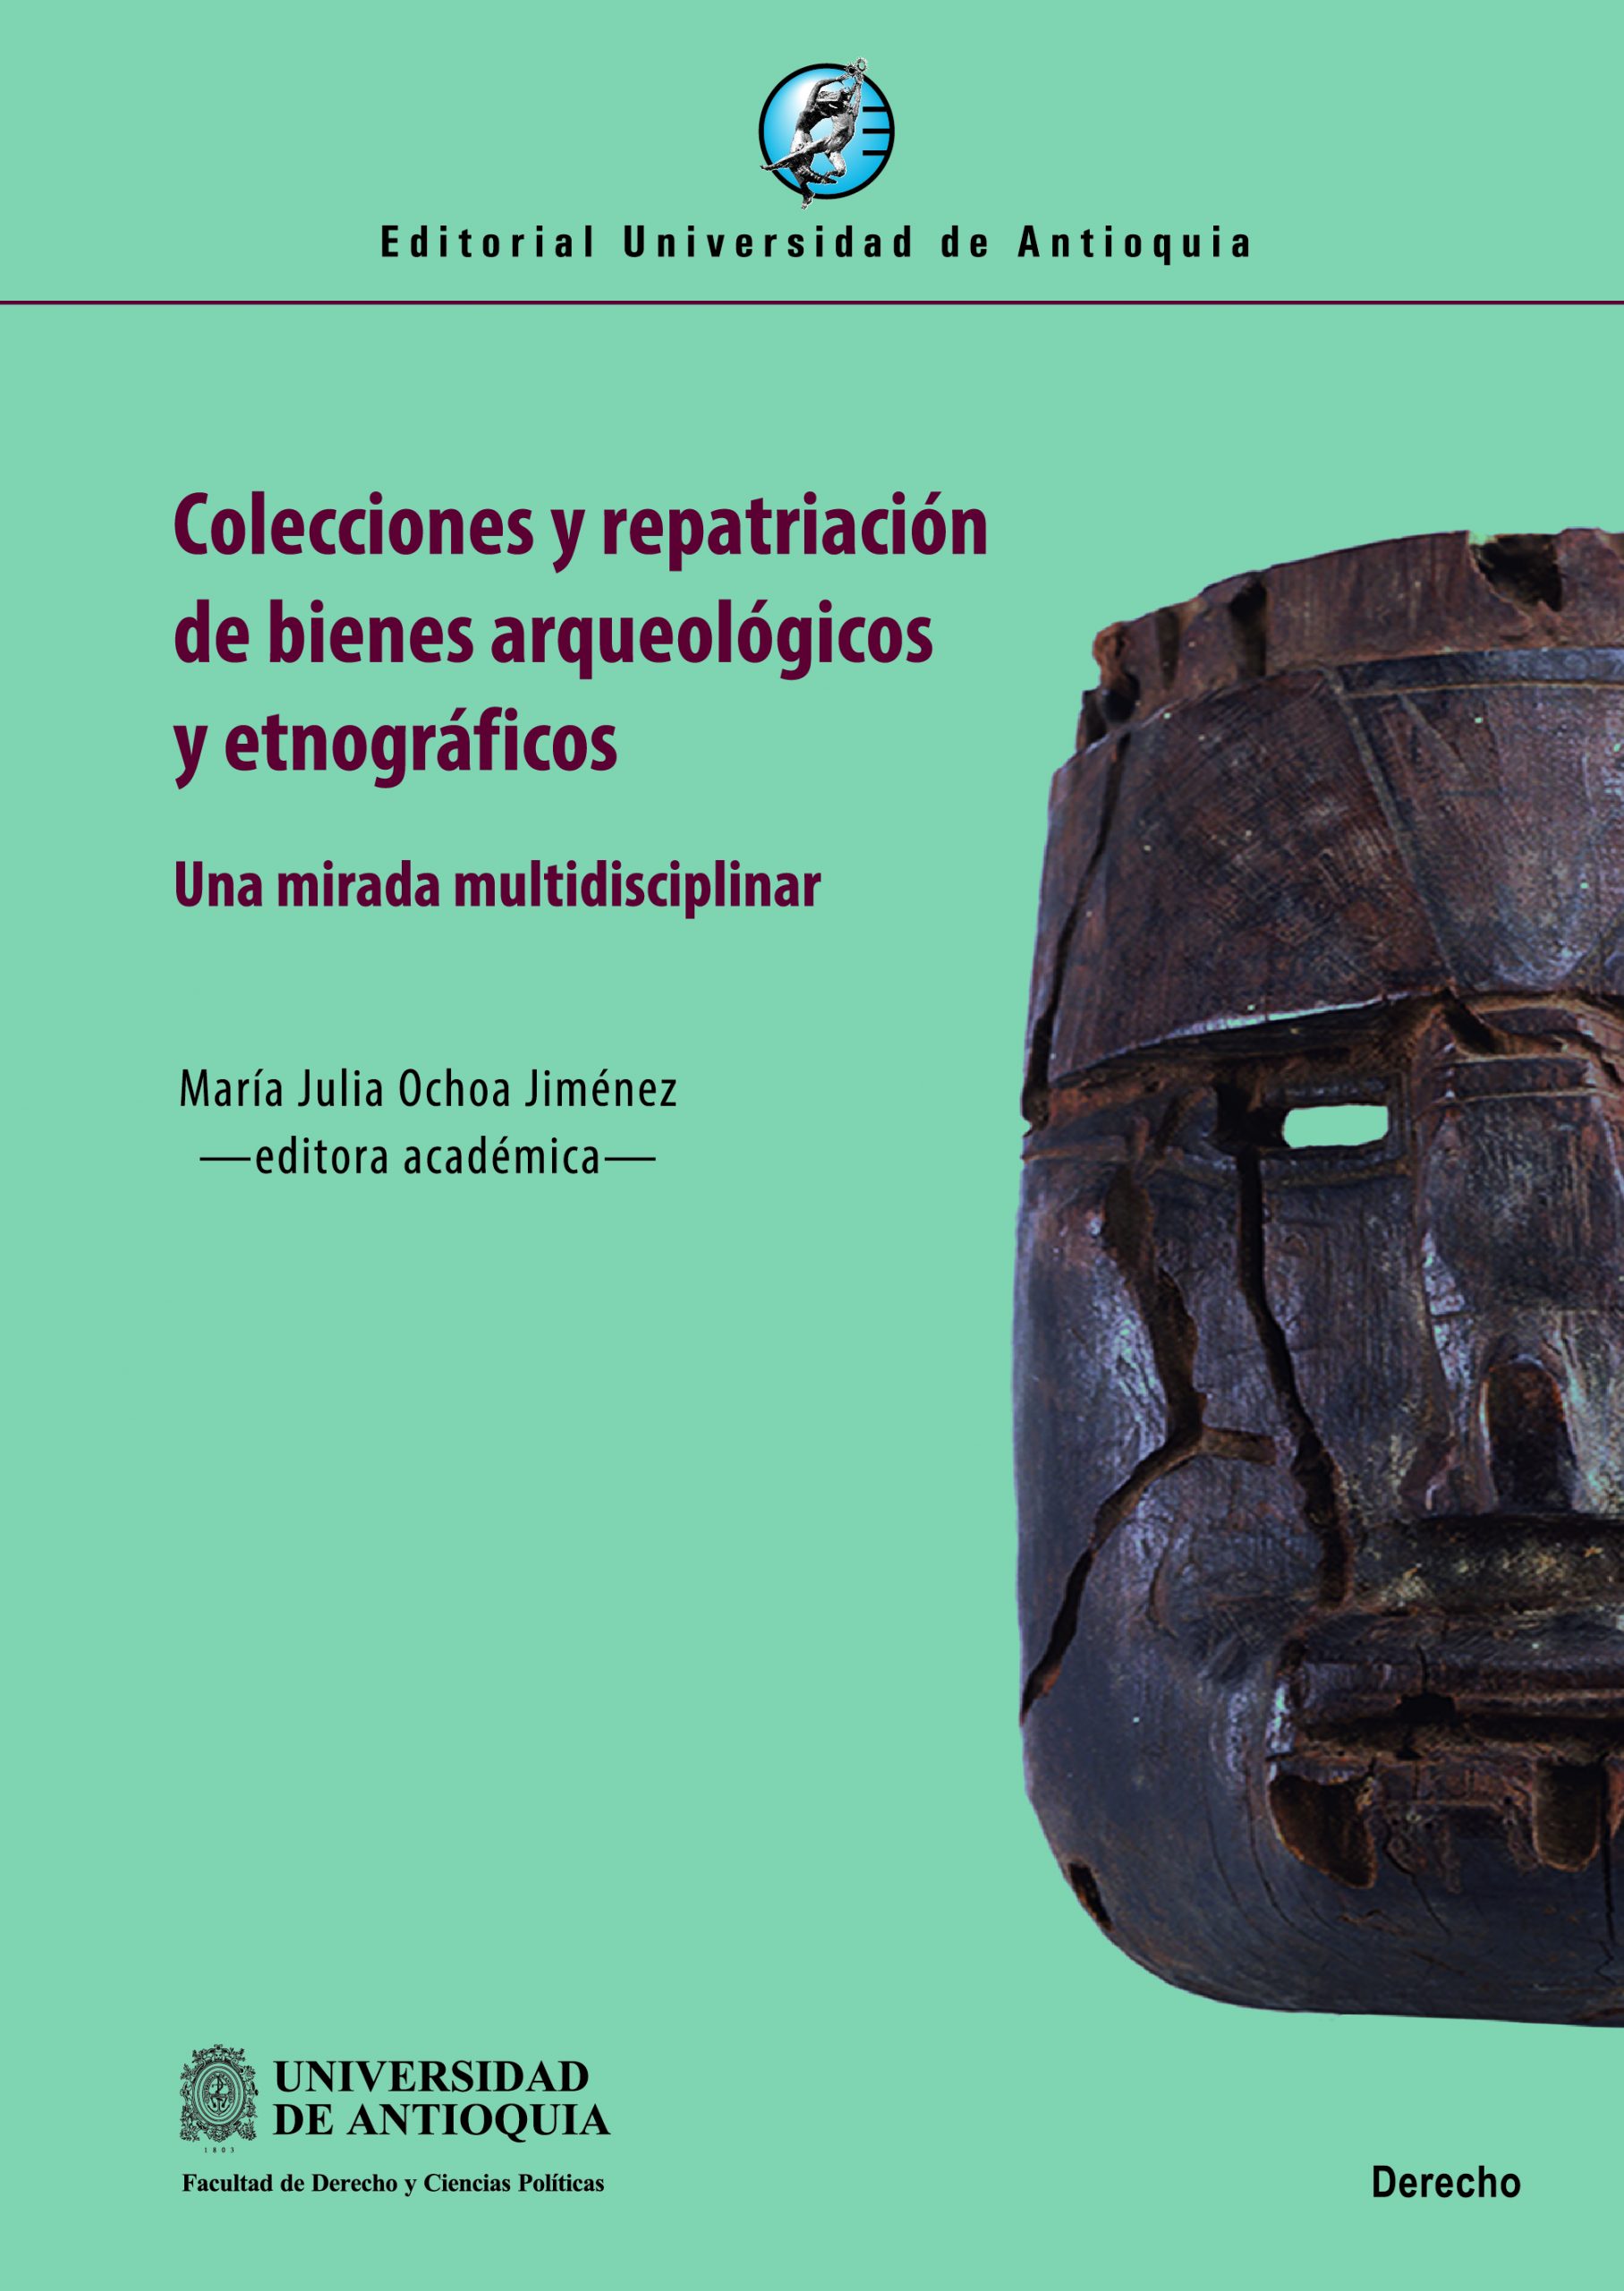 Colecciones y repatriación de bienes arqueológicos y etnográficos. Una mirada multidisciplinar